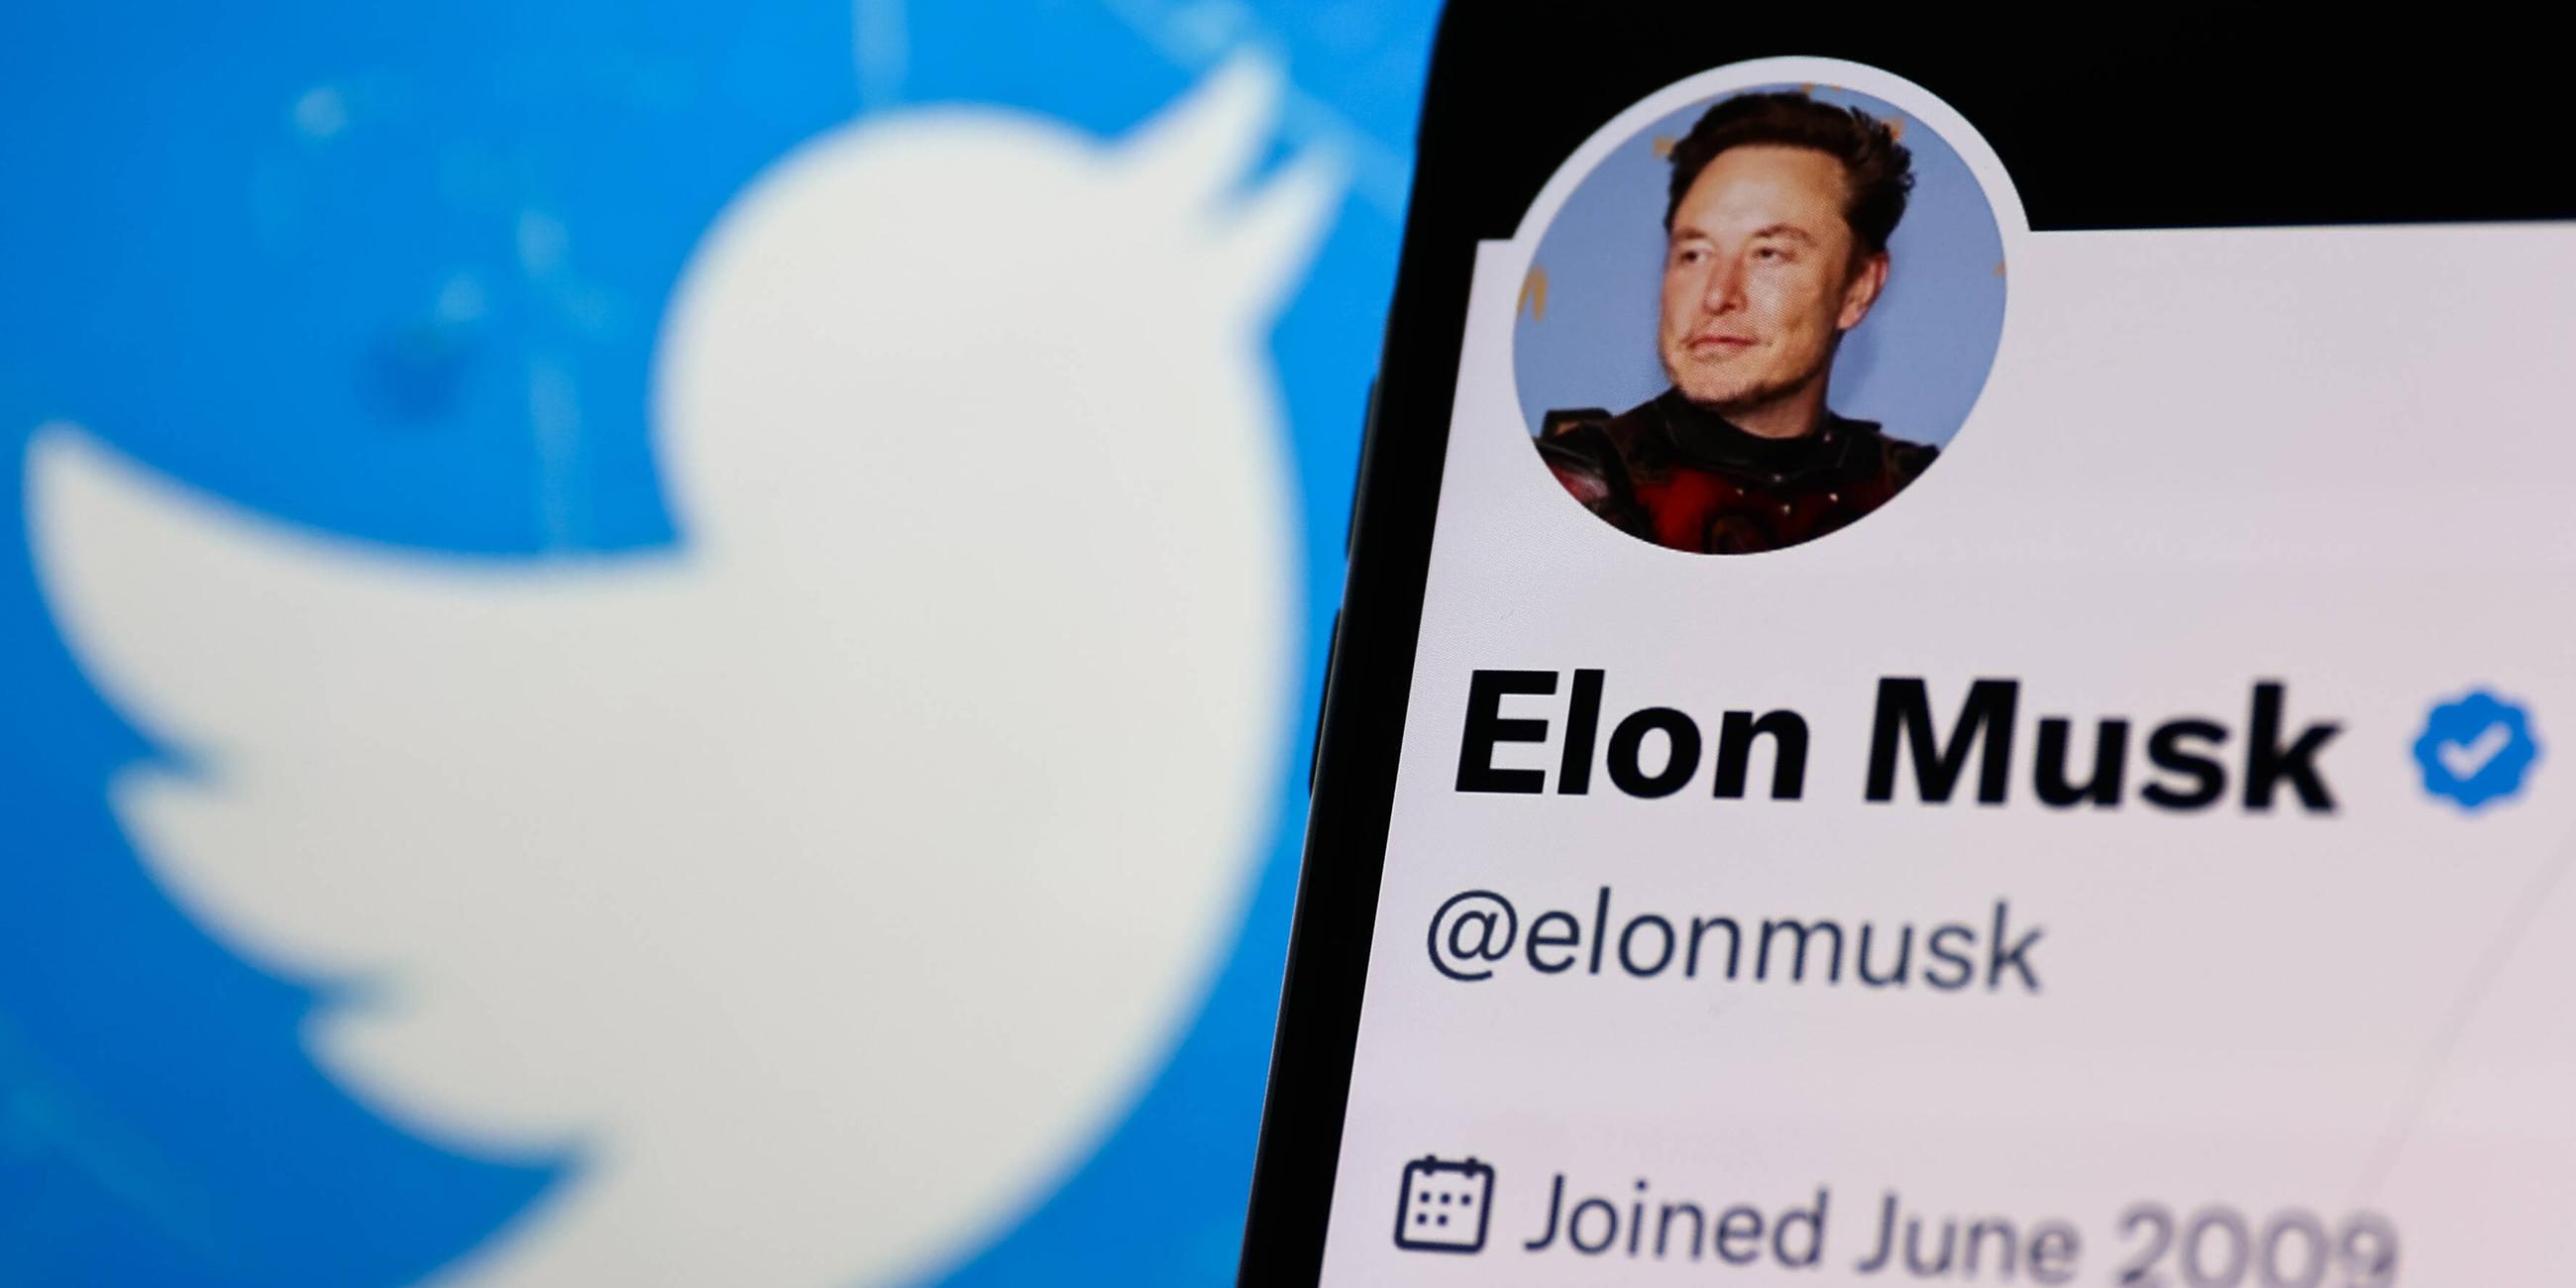 Elon Musk-Konto auf Twitter auf einem Telefon-Bildschirm und Twitter-Logo auf einem Laptop-Bildschirm, aufgenommen am 14.11.2022